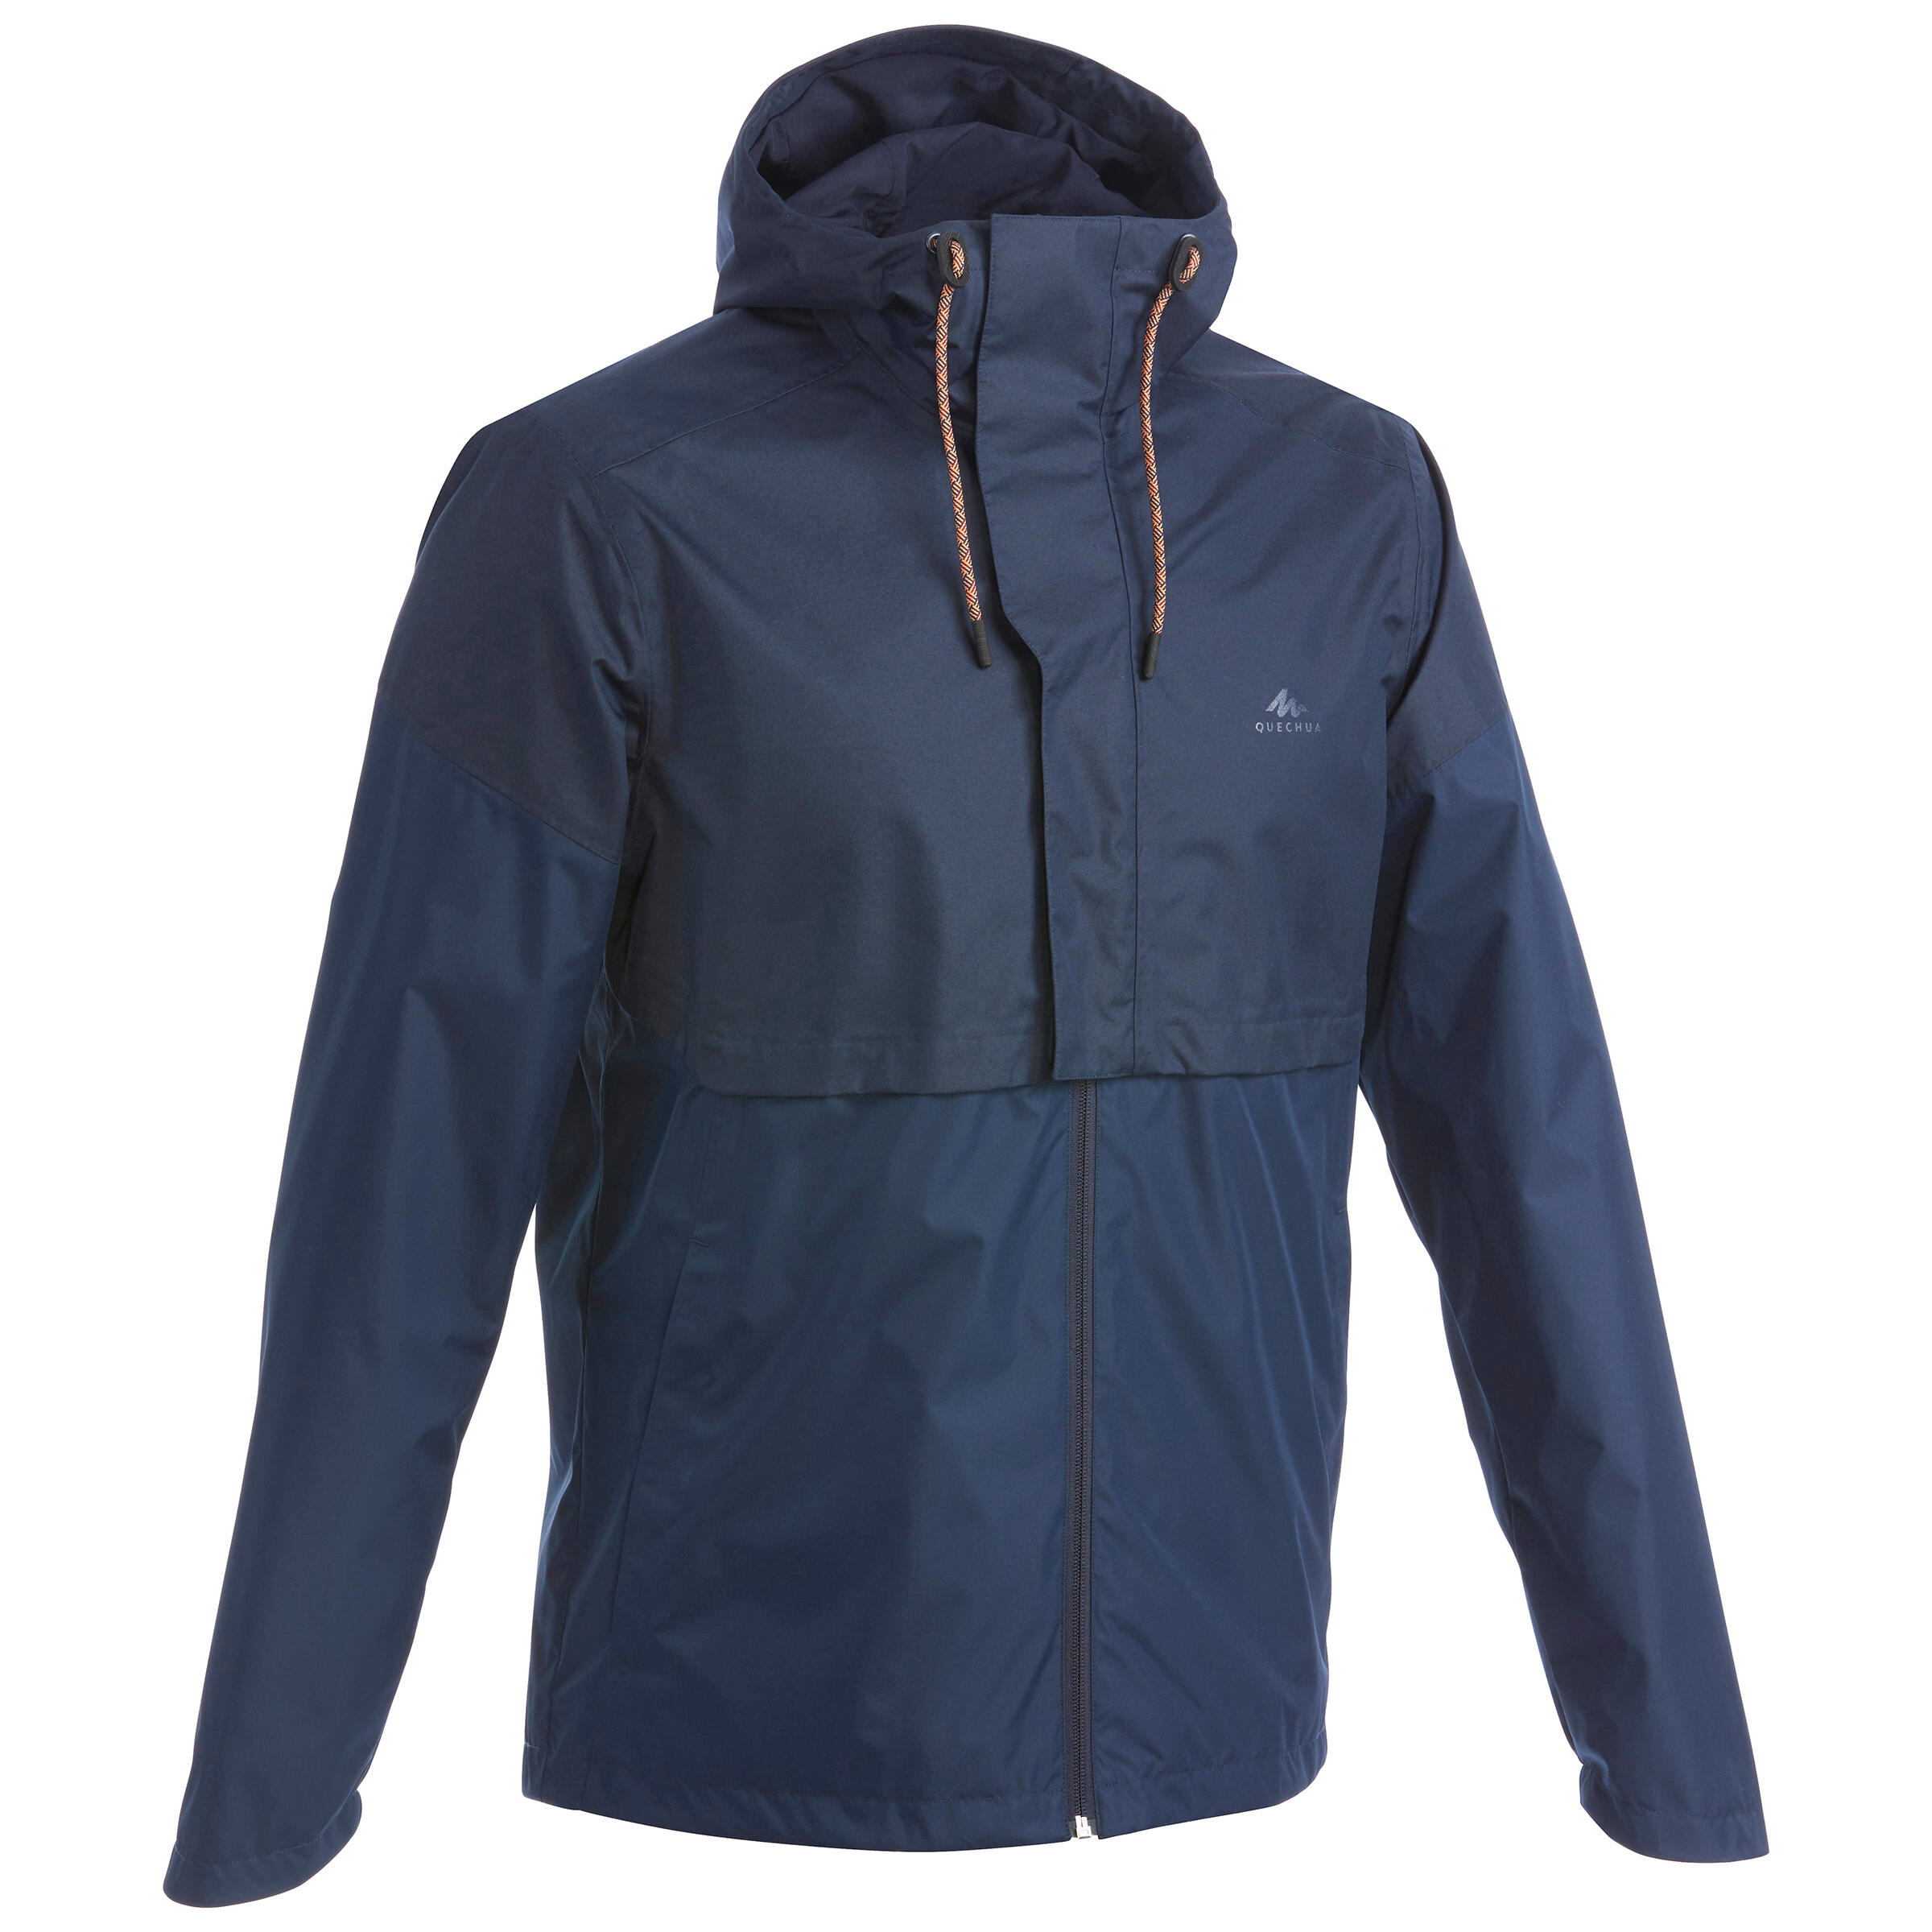 Men's waterpoof jacket - NH500 - Beige 2/18